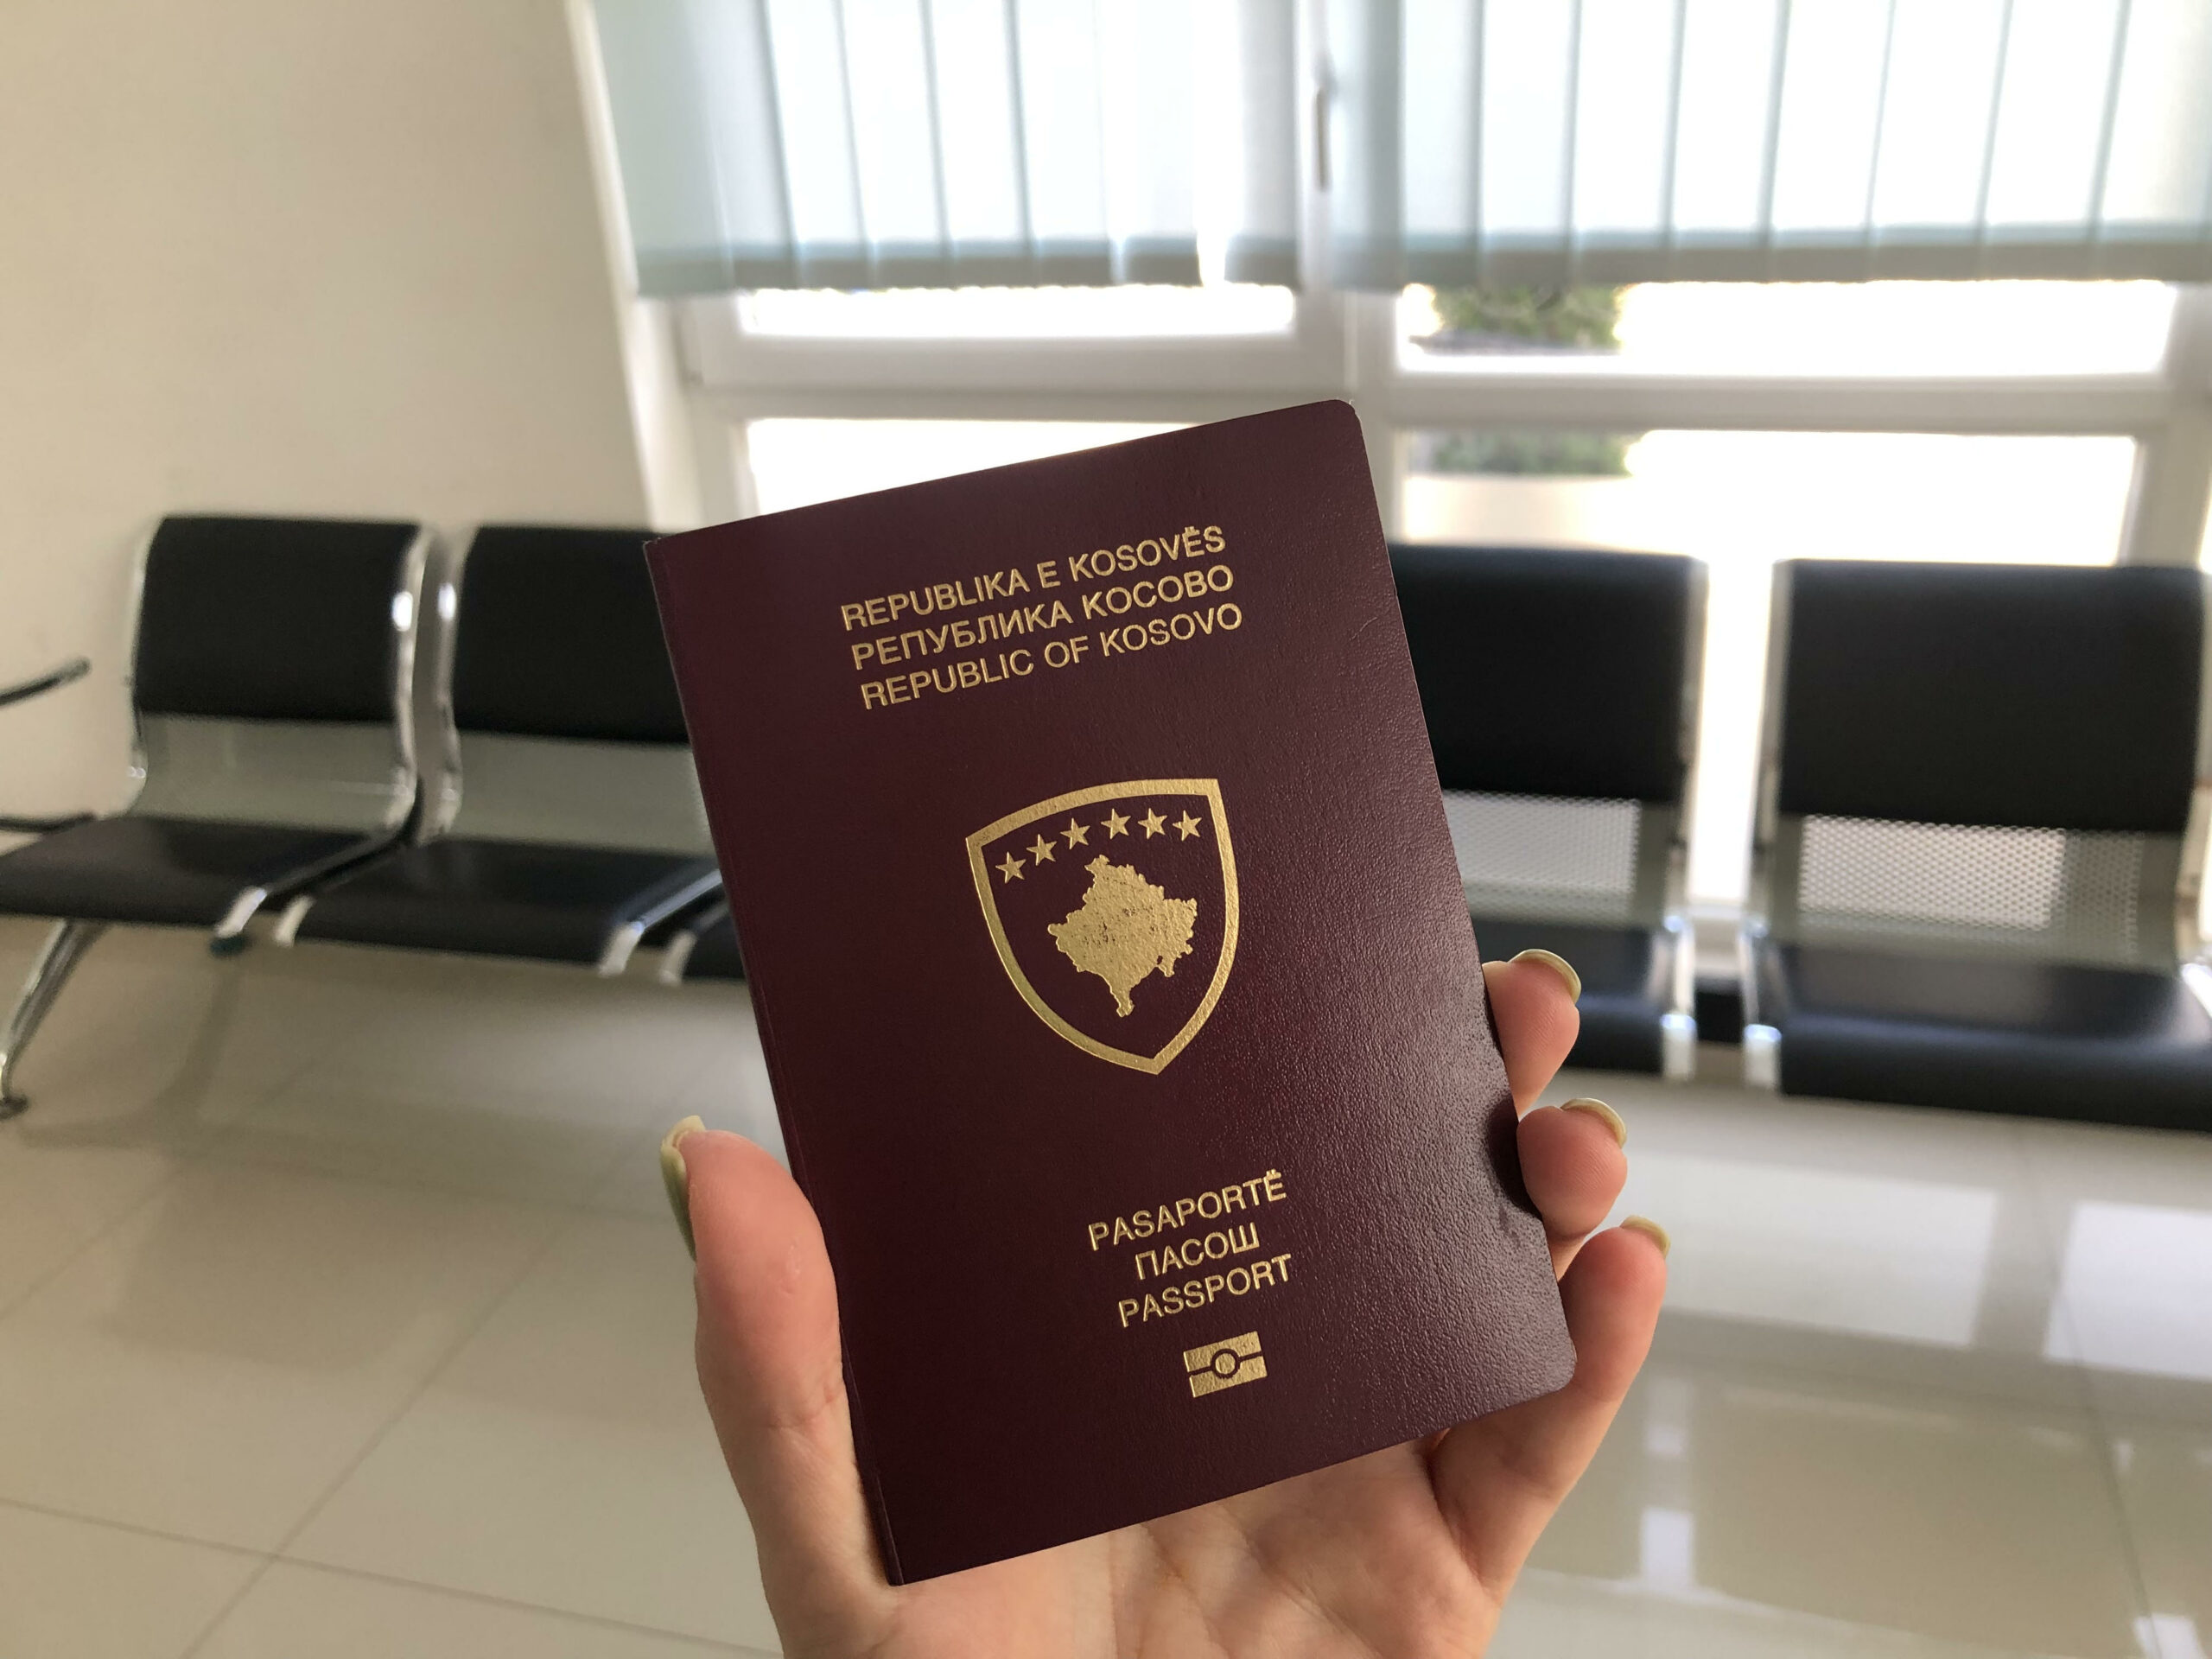 Liberalizimi ndikon që rreth 600 serbë të marrin pasaporten e Kosovës